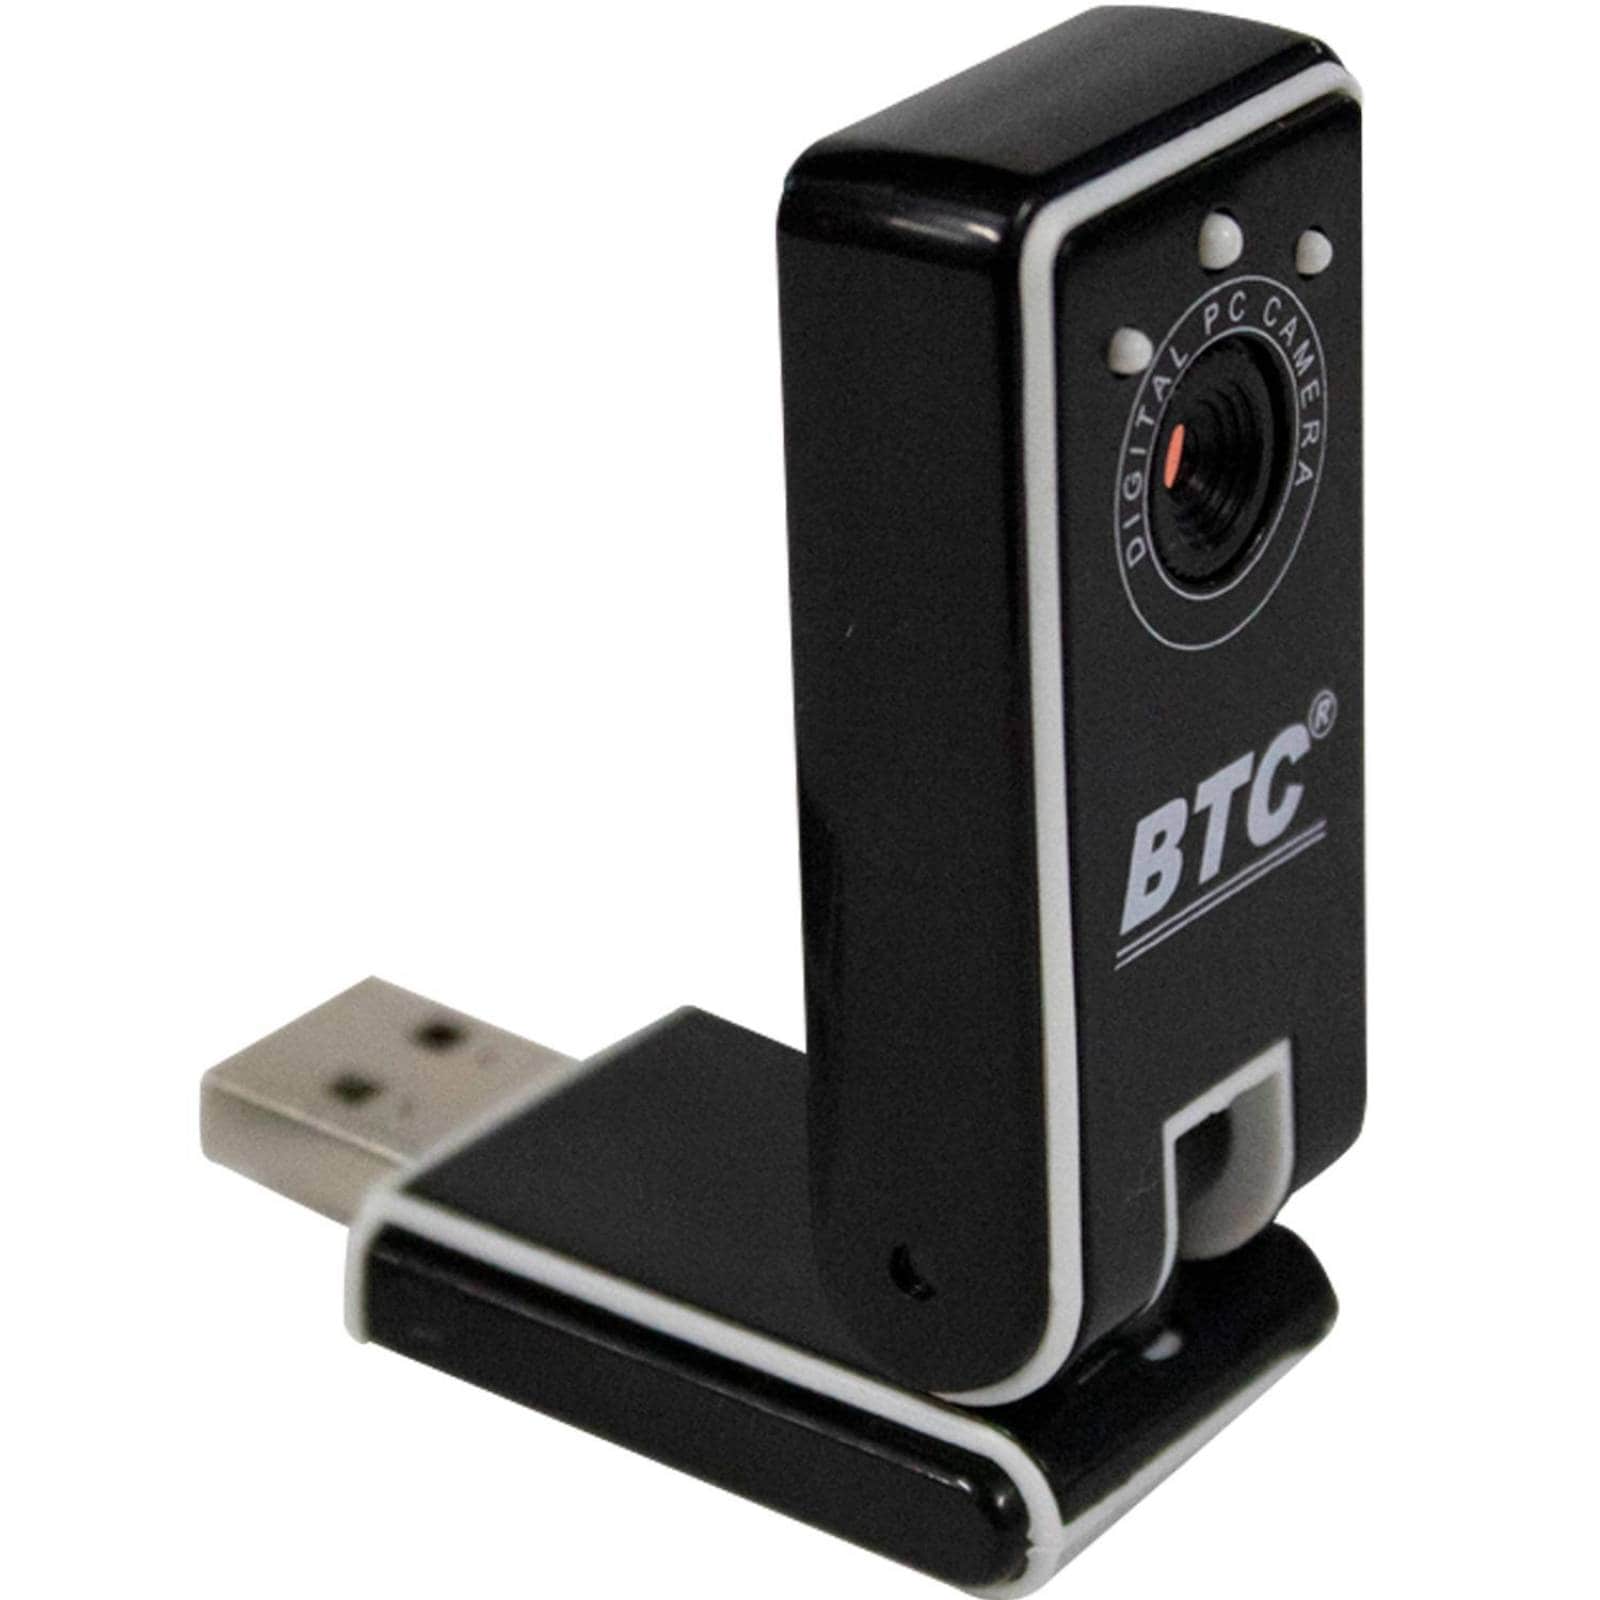 btc webcam drivers